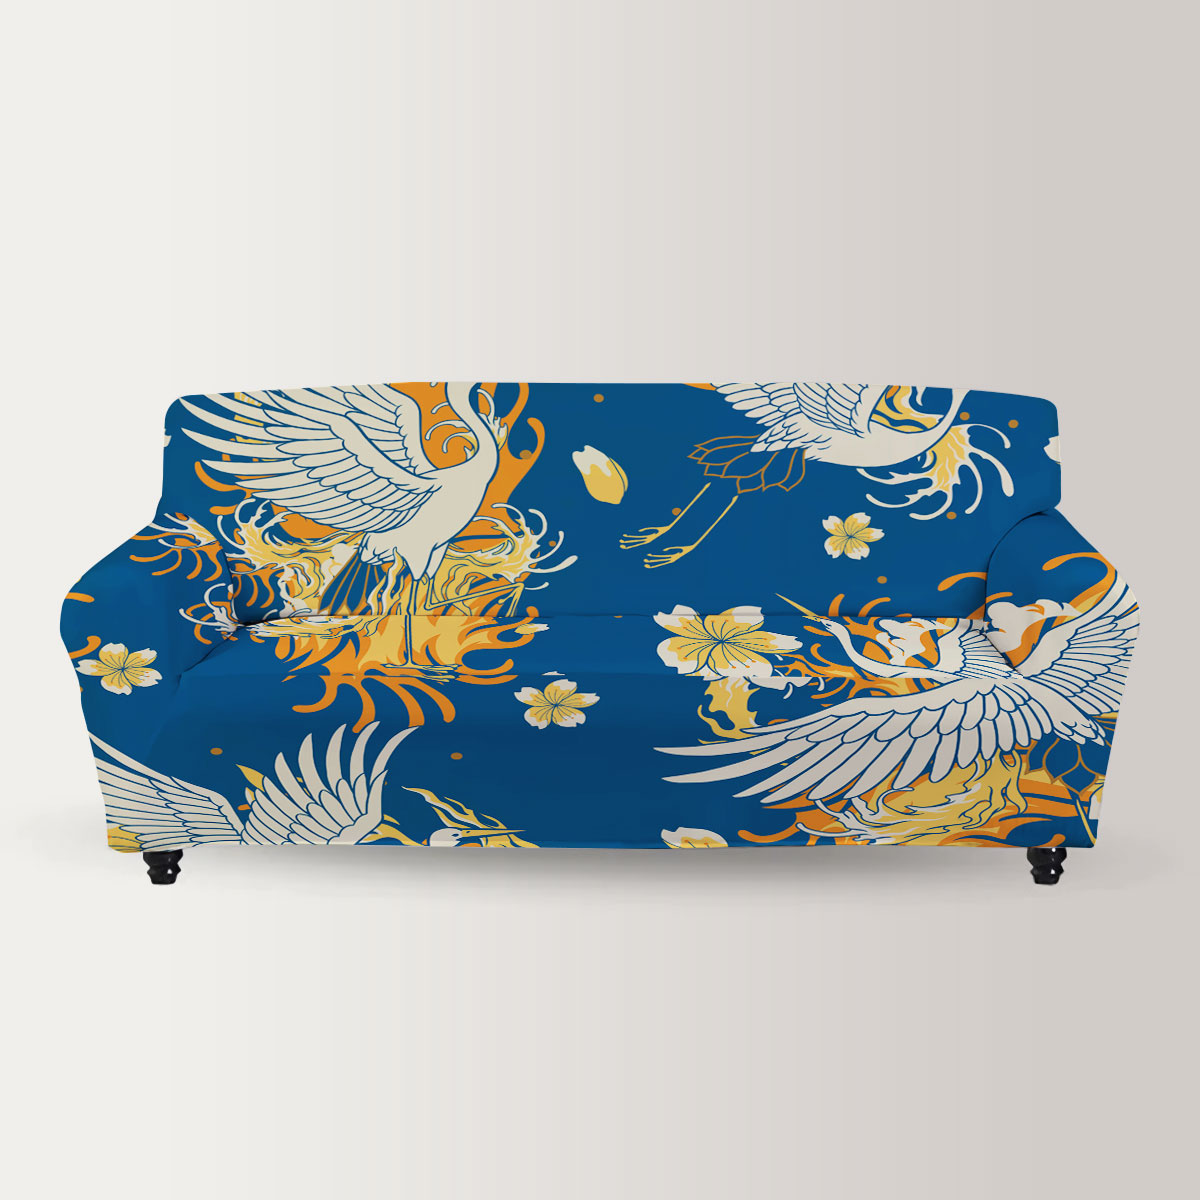 Fire Heron Art Sofa Cover